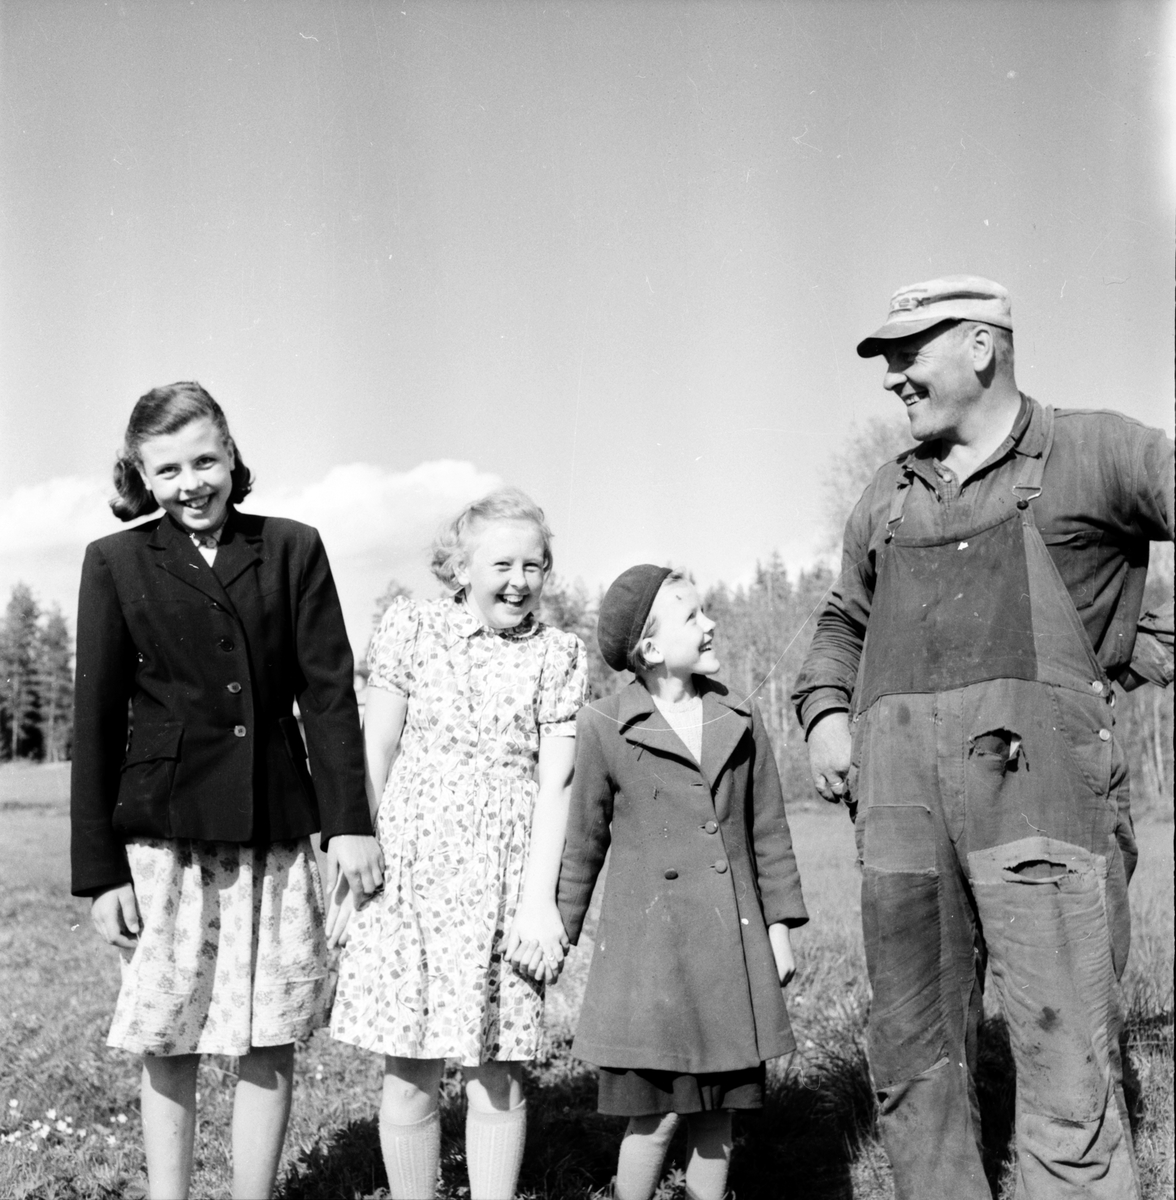 Yxbo, Bollnäs. Lantbruksnämnden på besök, Wård - Olle Sjöberg med Birgit, Karin och Märta.
30 Maj 1956.